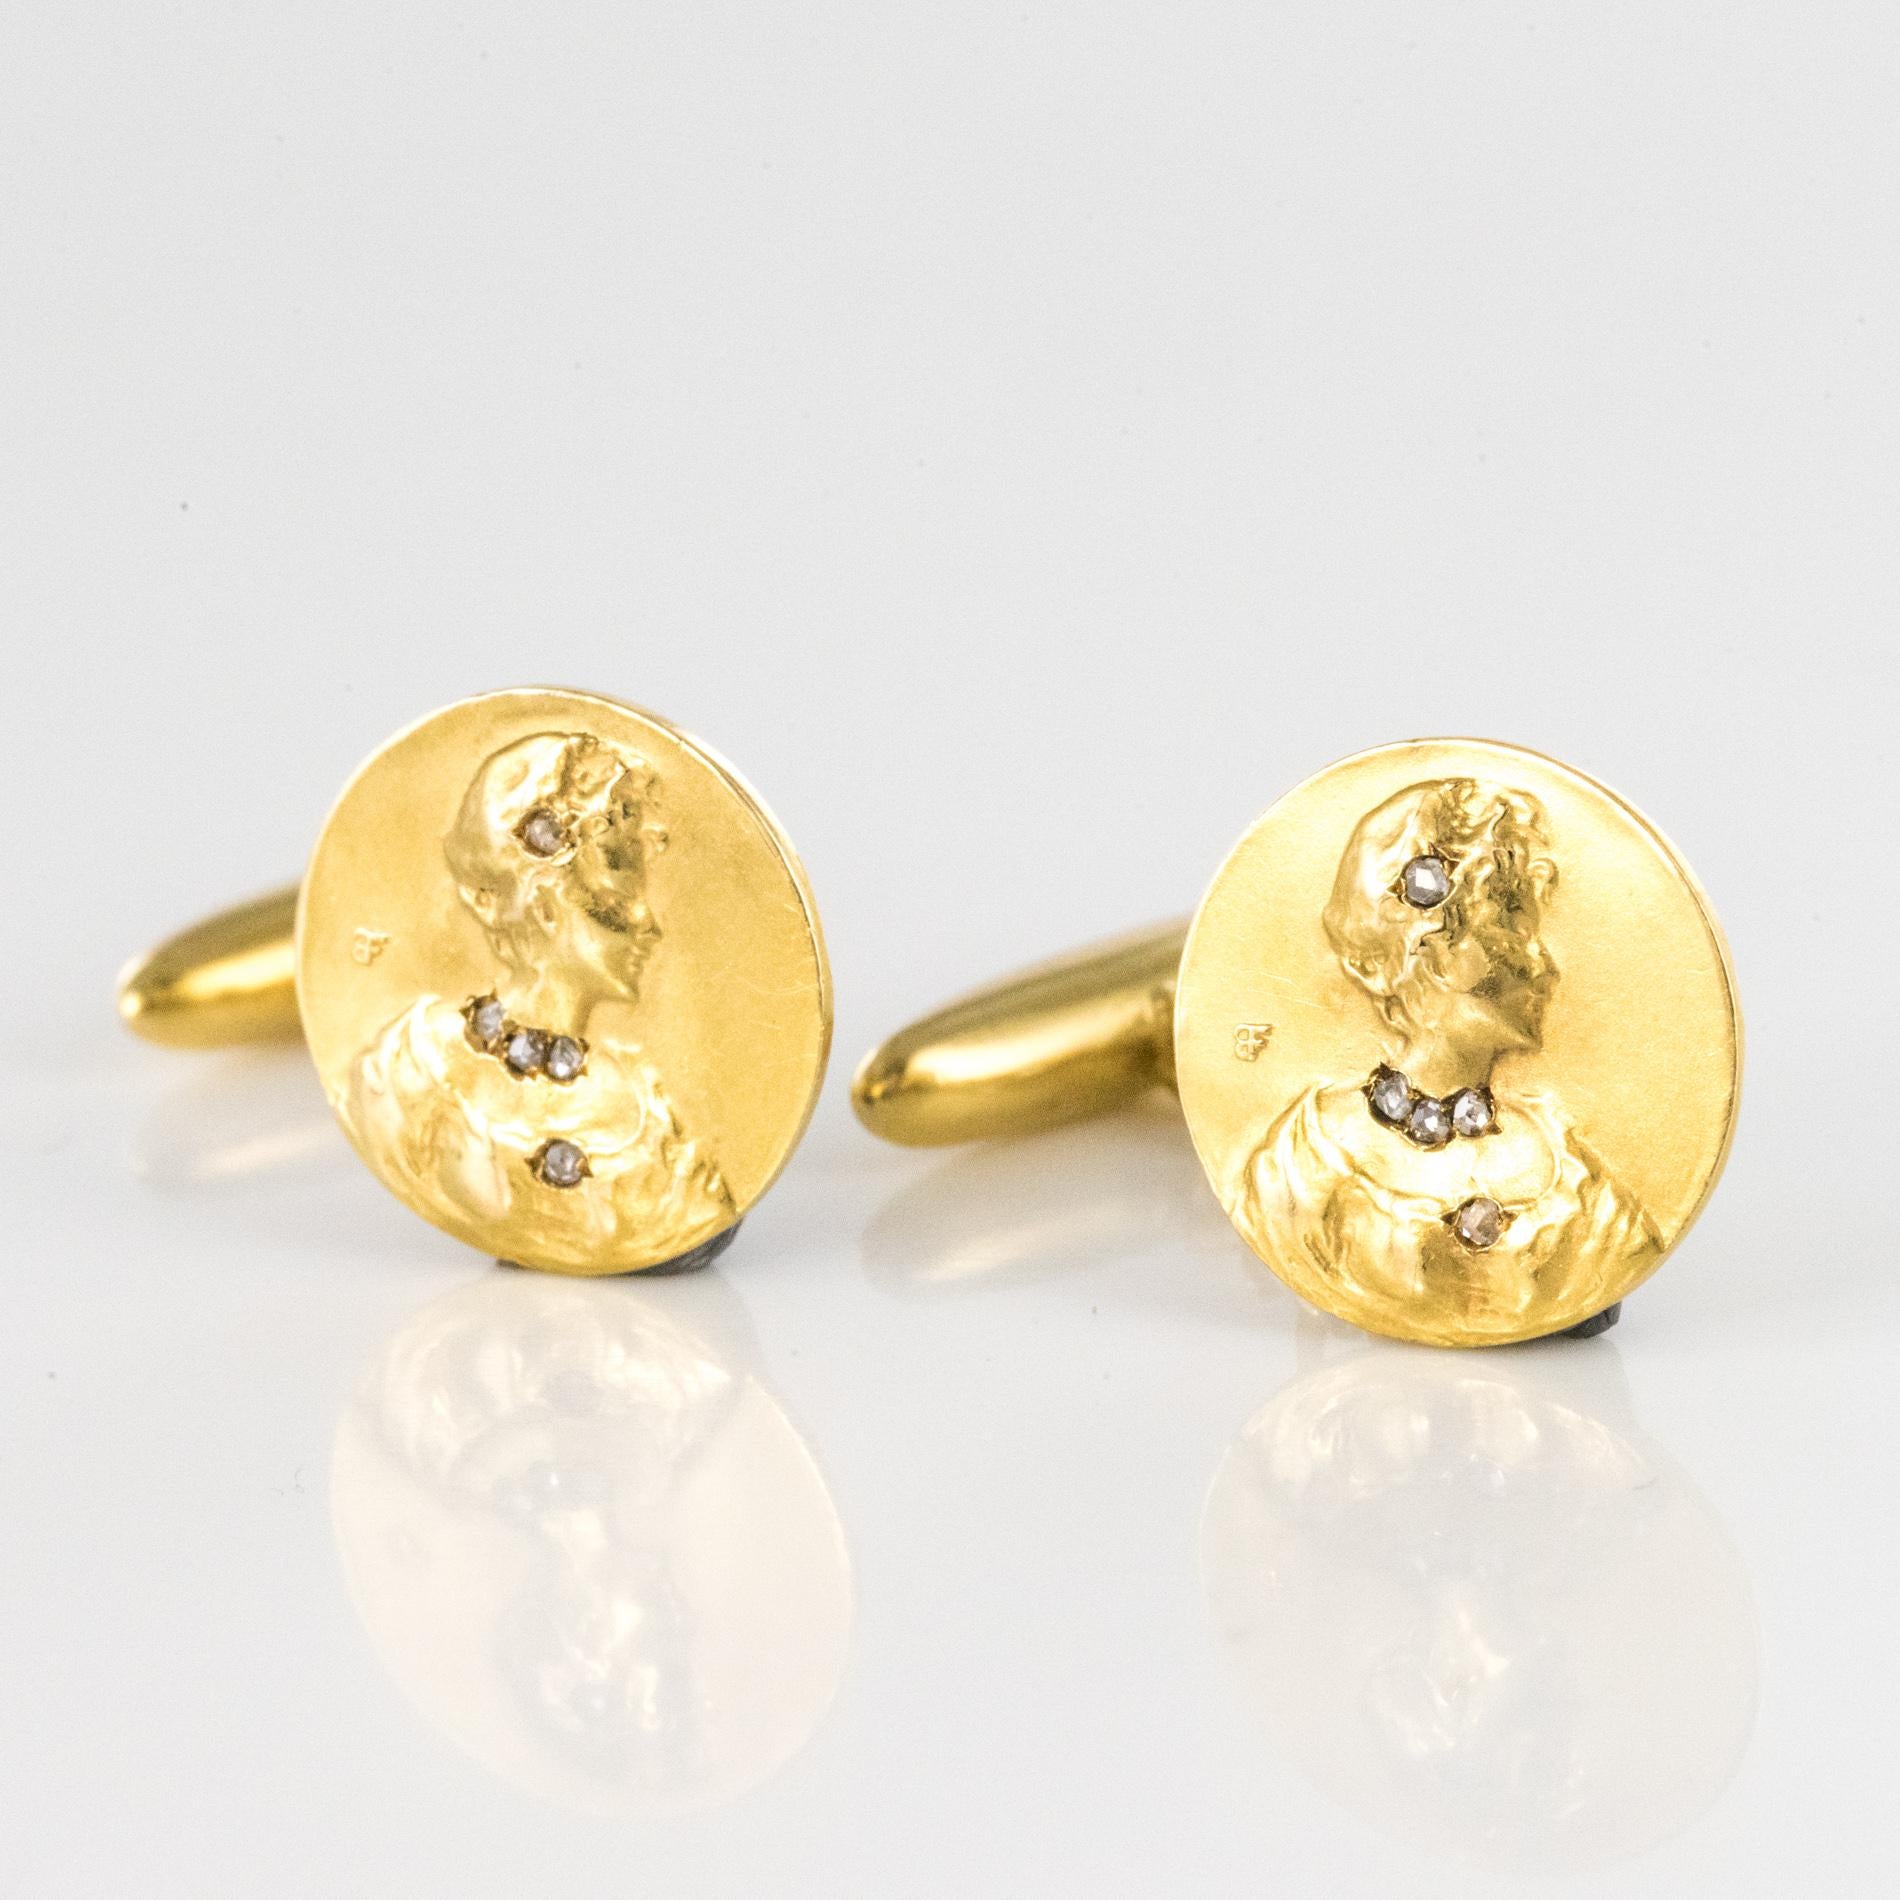 Rose Cut Art Nouveau Becker Diamonds 18 Karat Yellow Gold Cufflinks For Sale